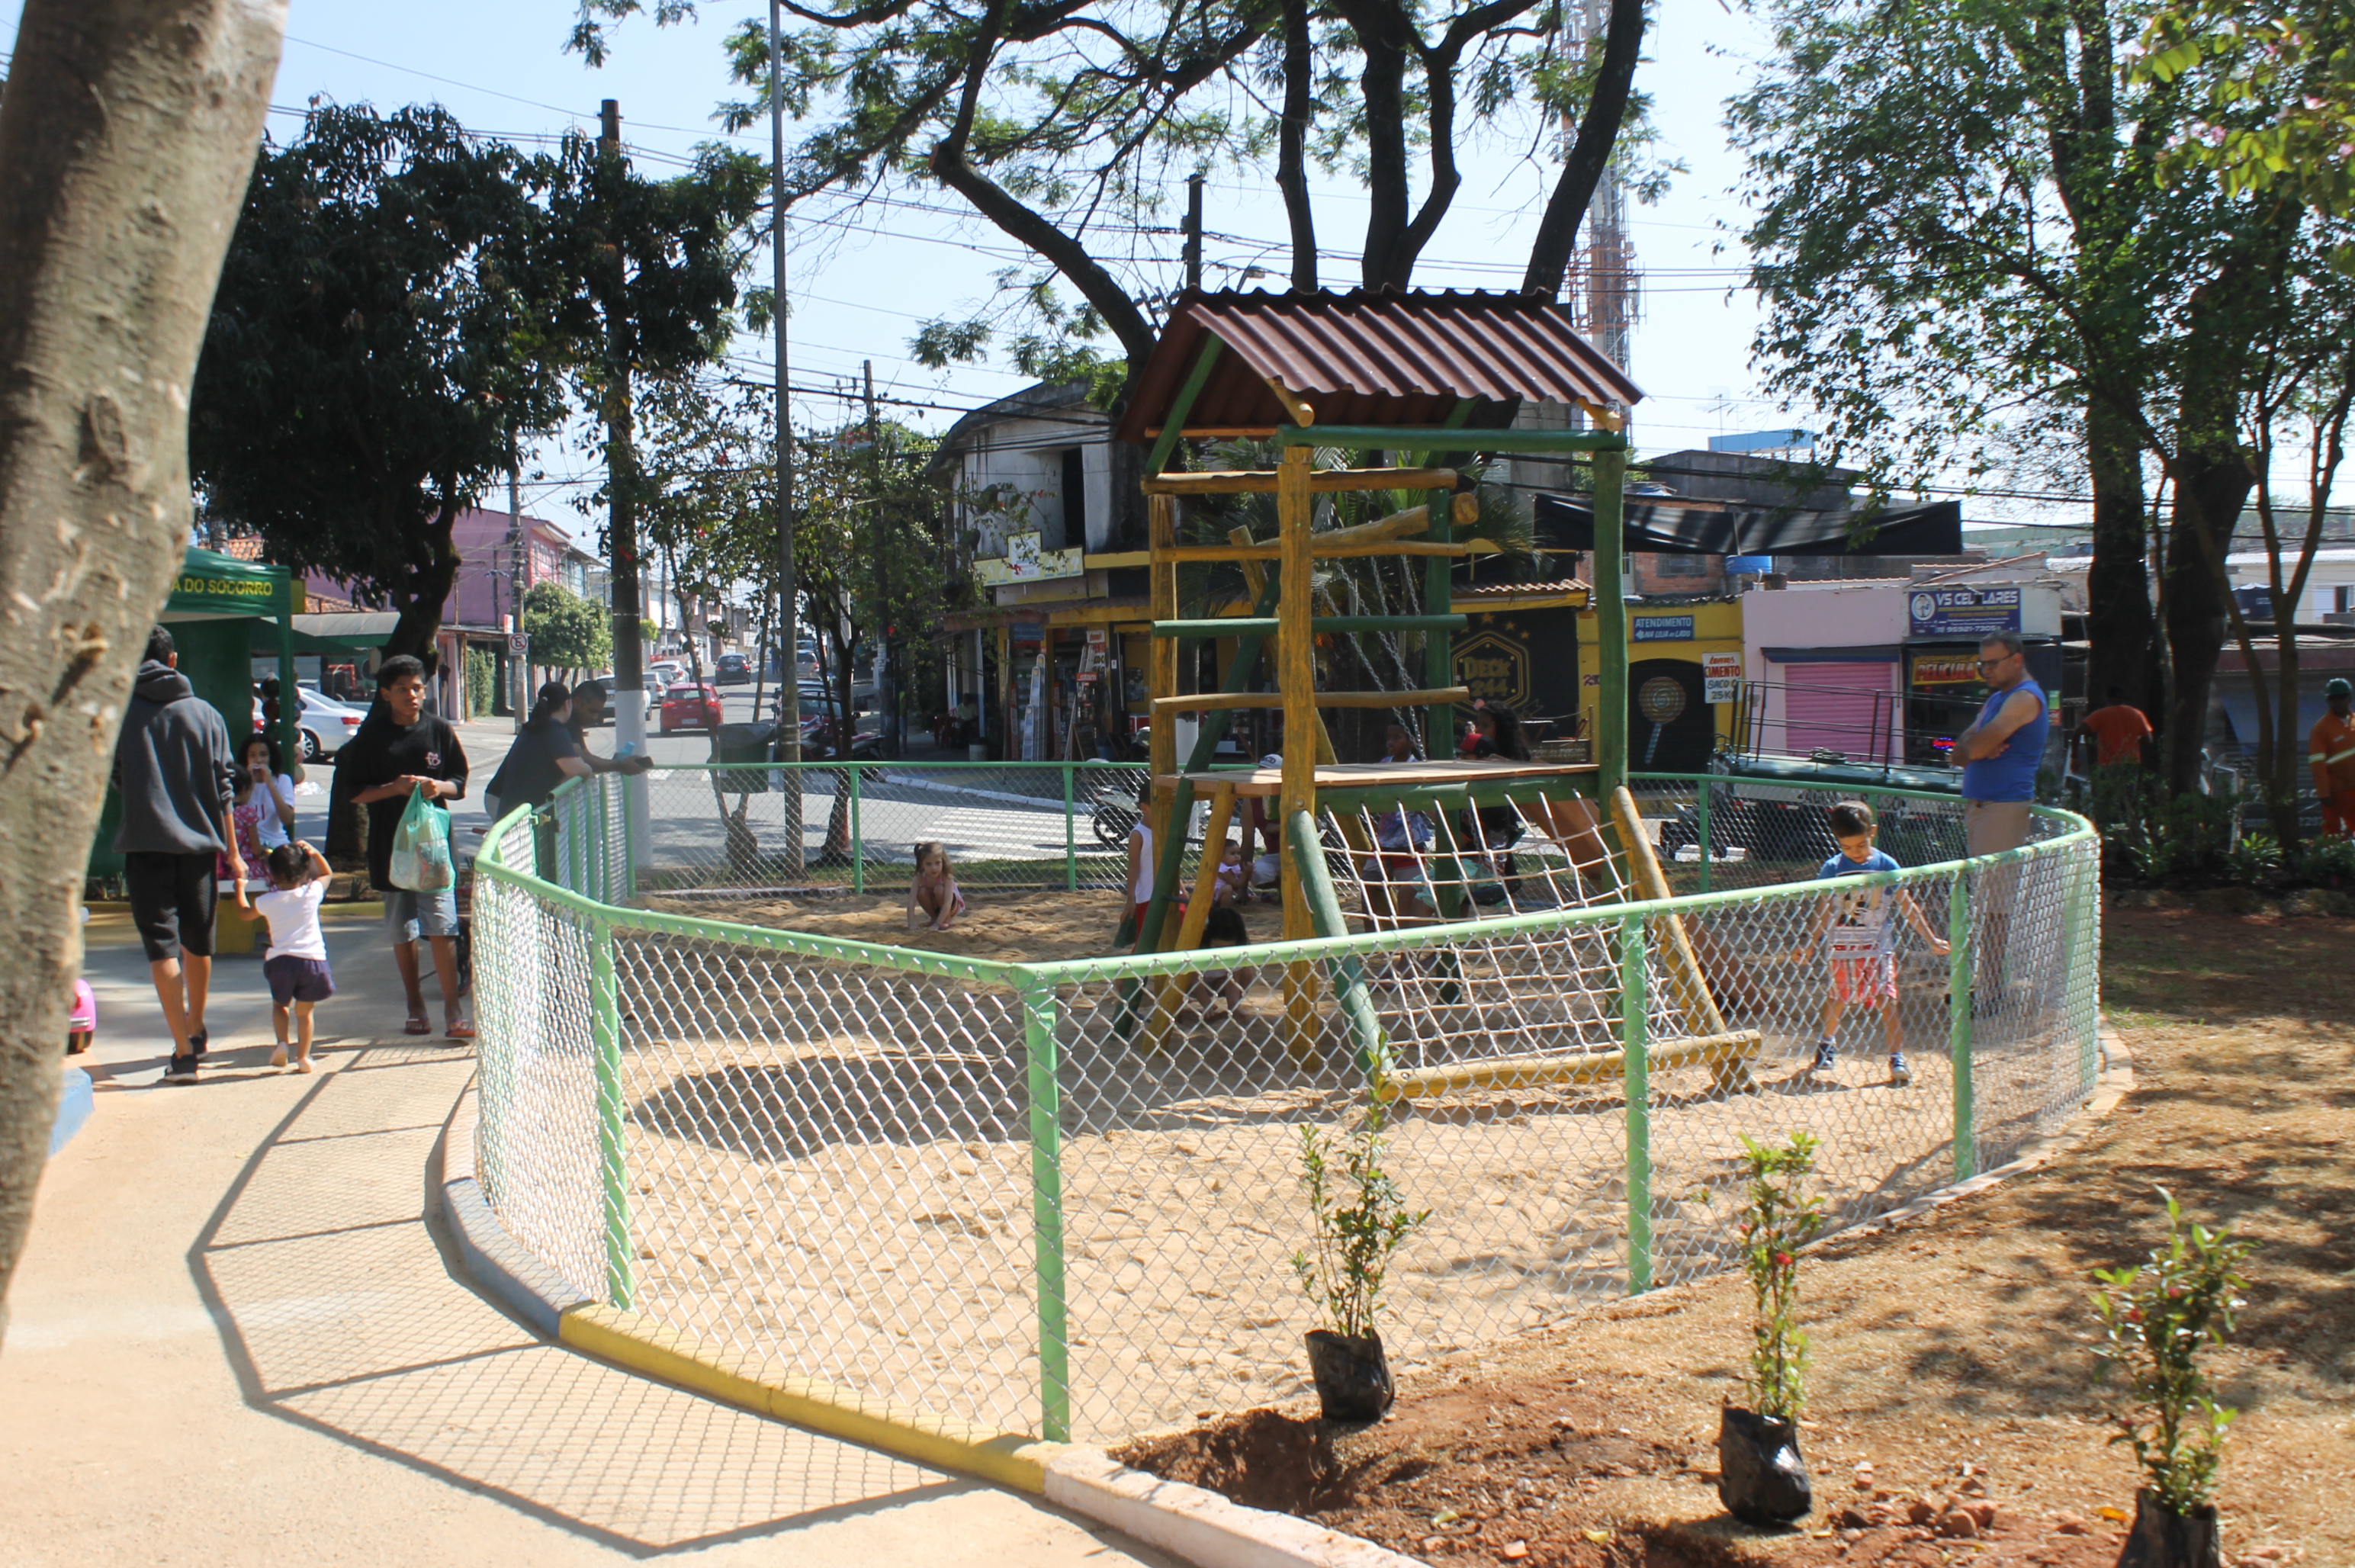 #PraCegoVer - Espaço para crianças, cercado por alambrado, com a Casa do Tarzan no centro.